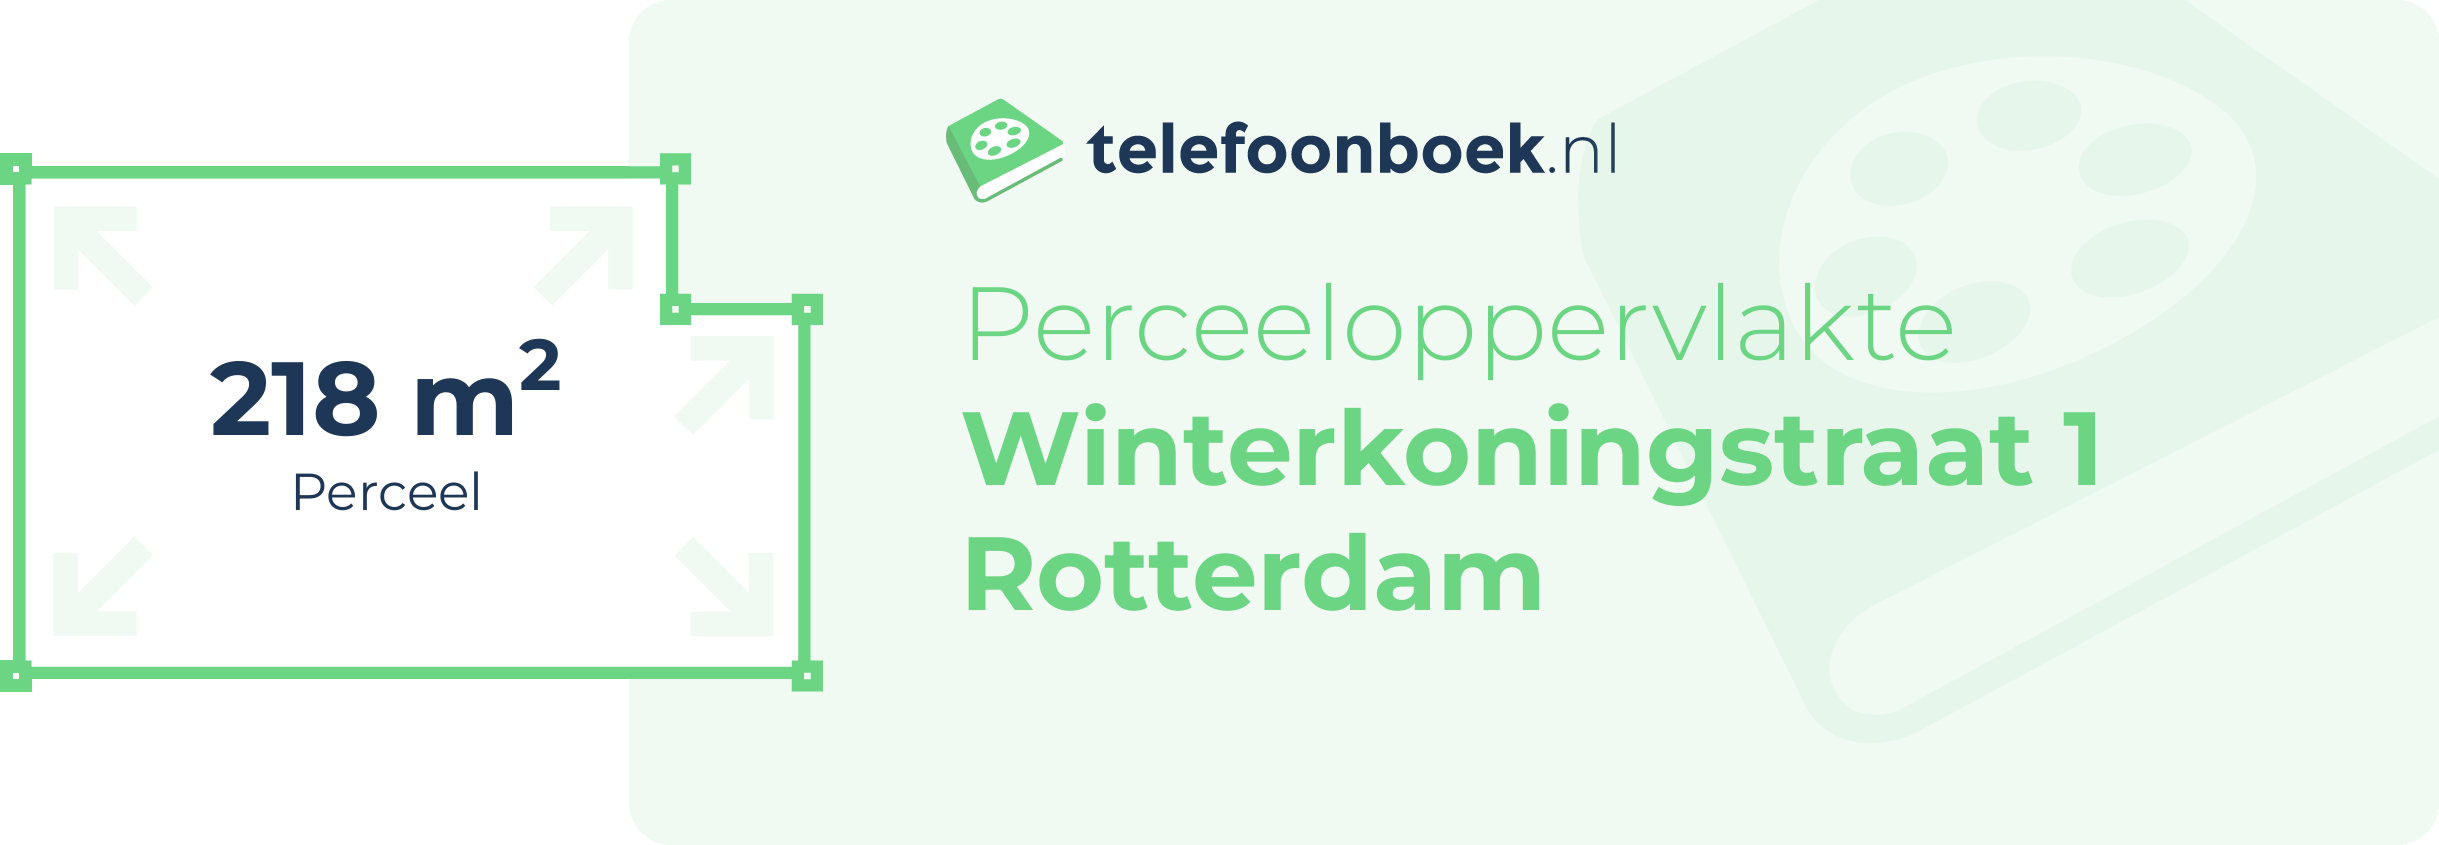 Perceeloppervlakte Winterkoningstraat 1 Rotterdam